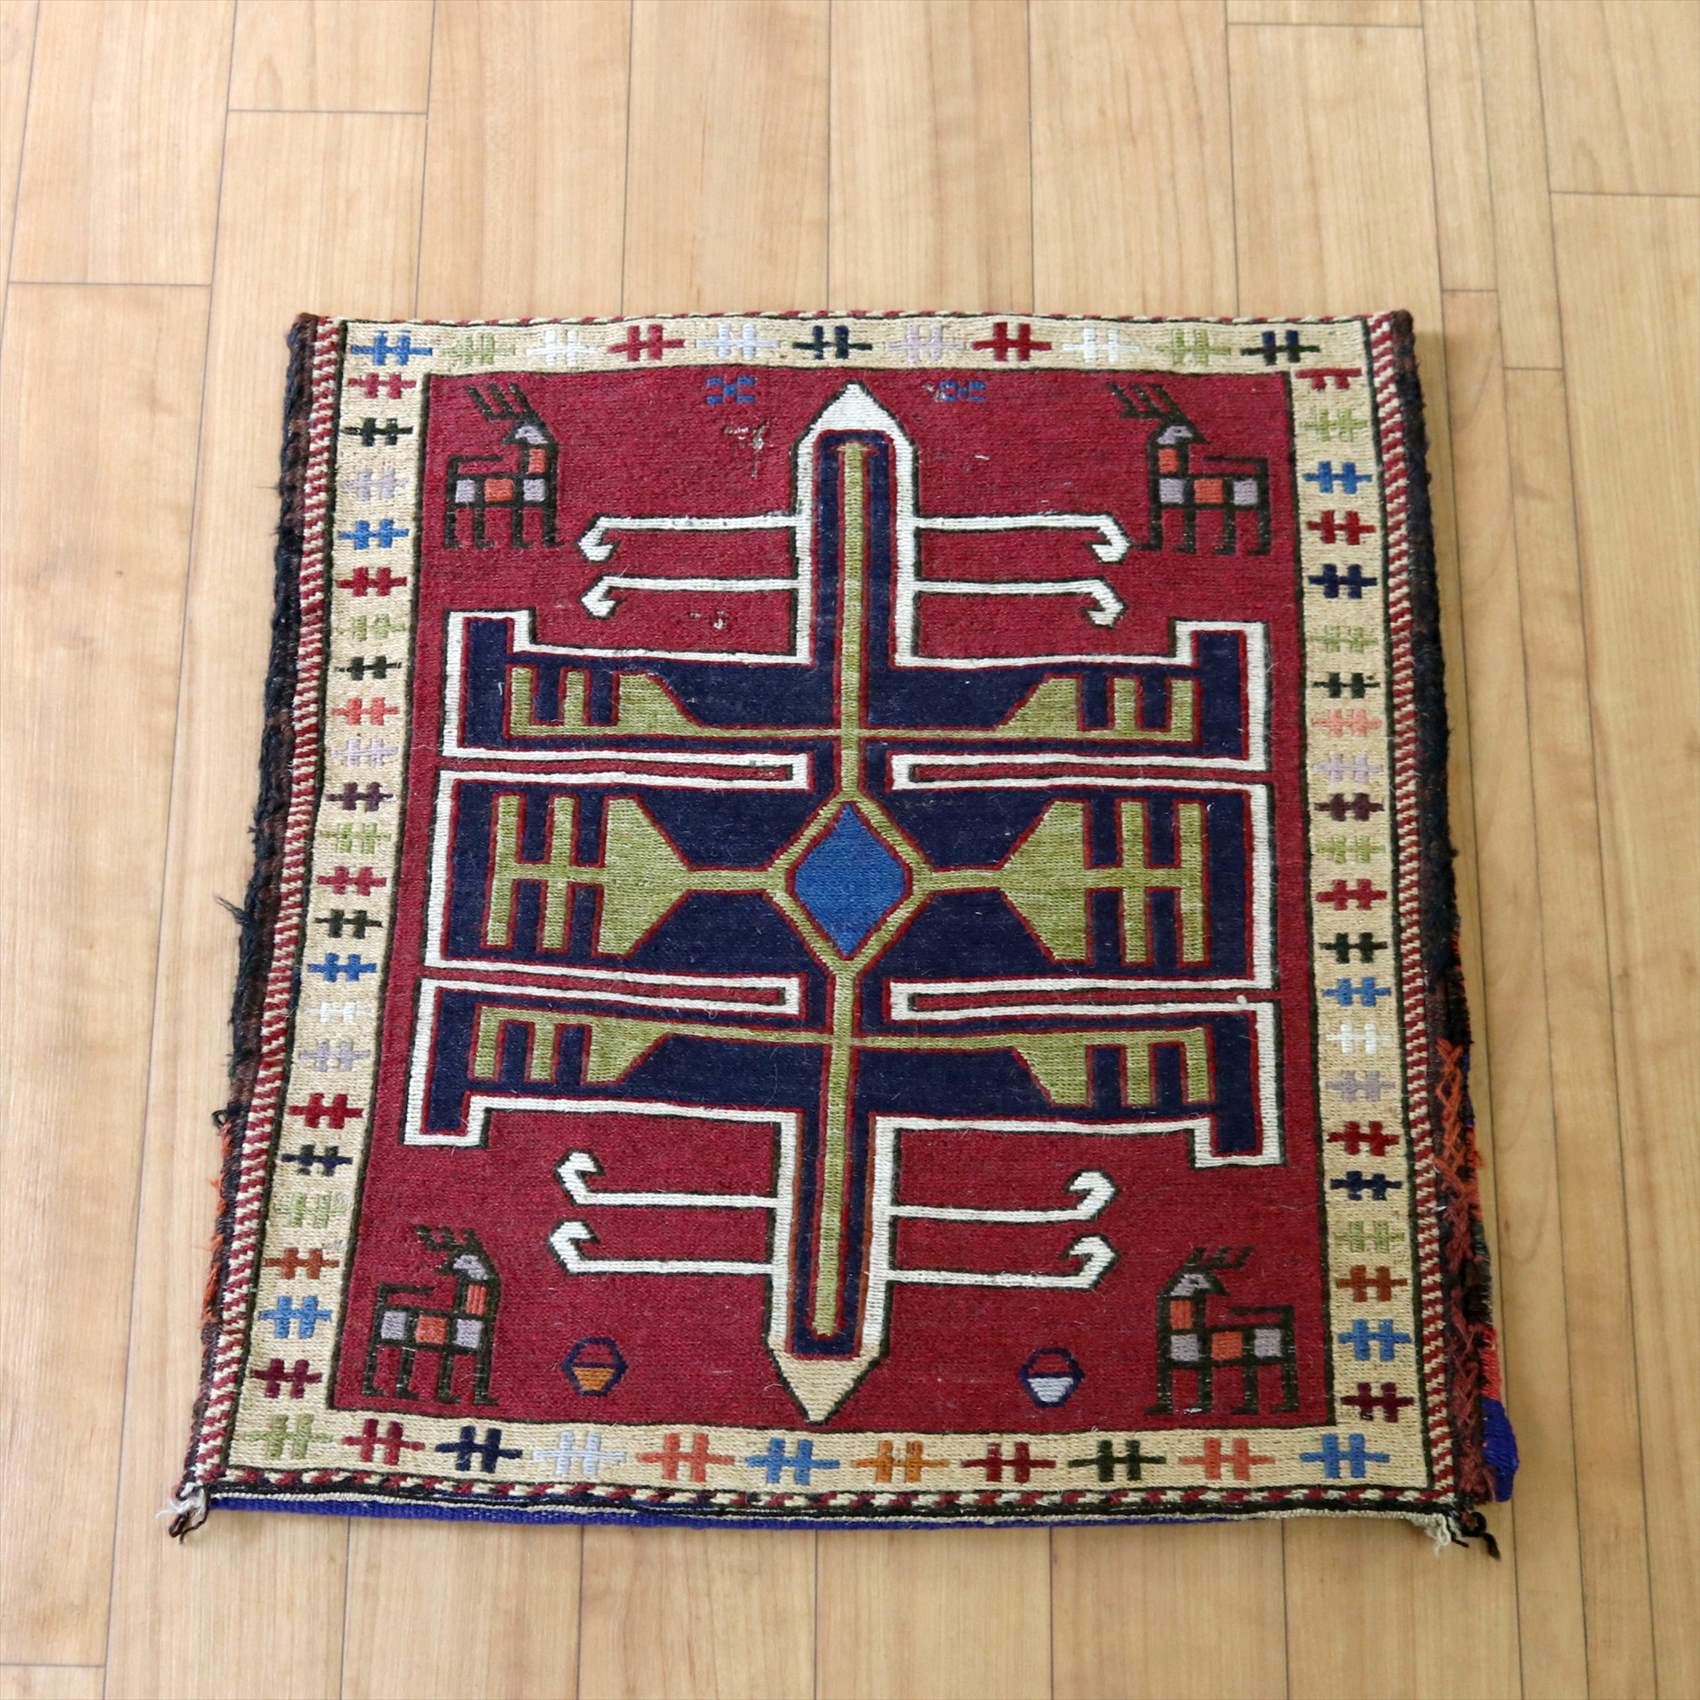 オリジナルクッション 正方形 遊牧民の生活道具44×41cm レッド ネイビー スマック織り OUTLET